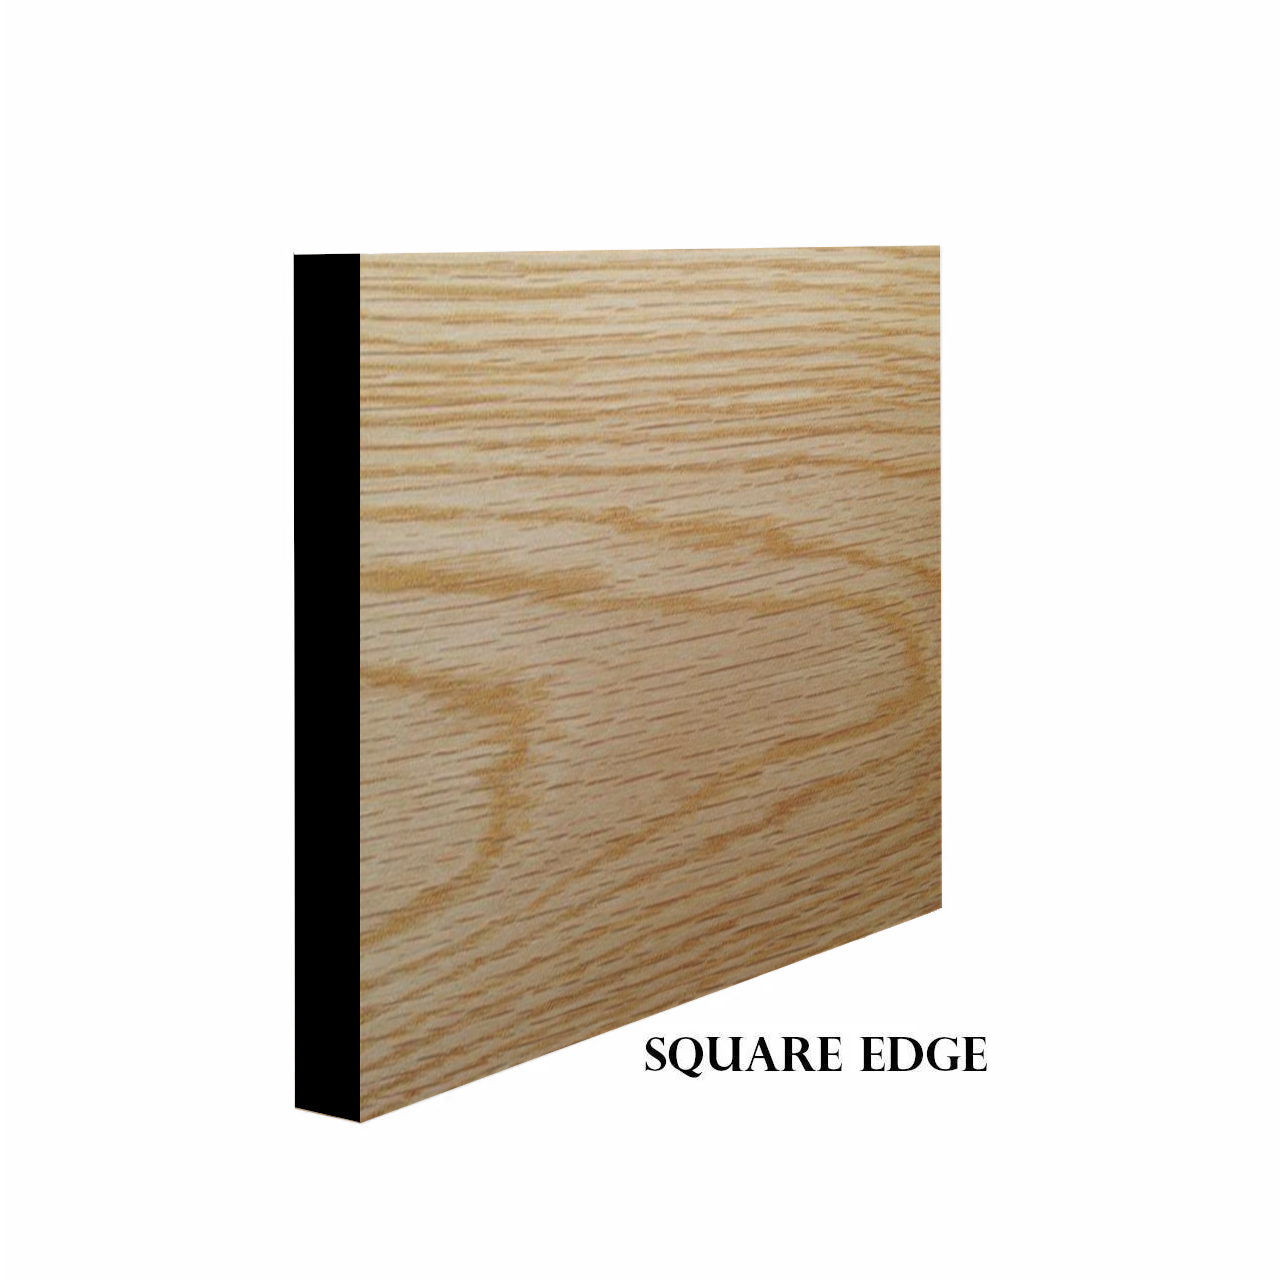 Square Edge